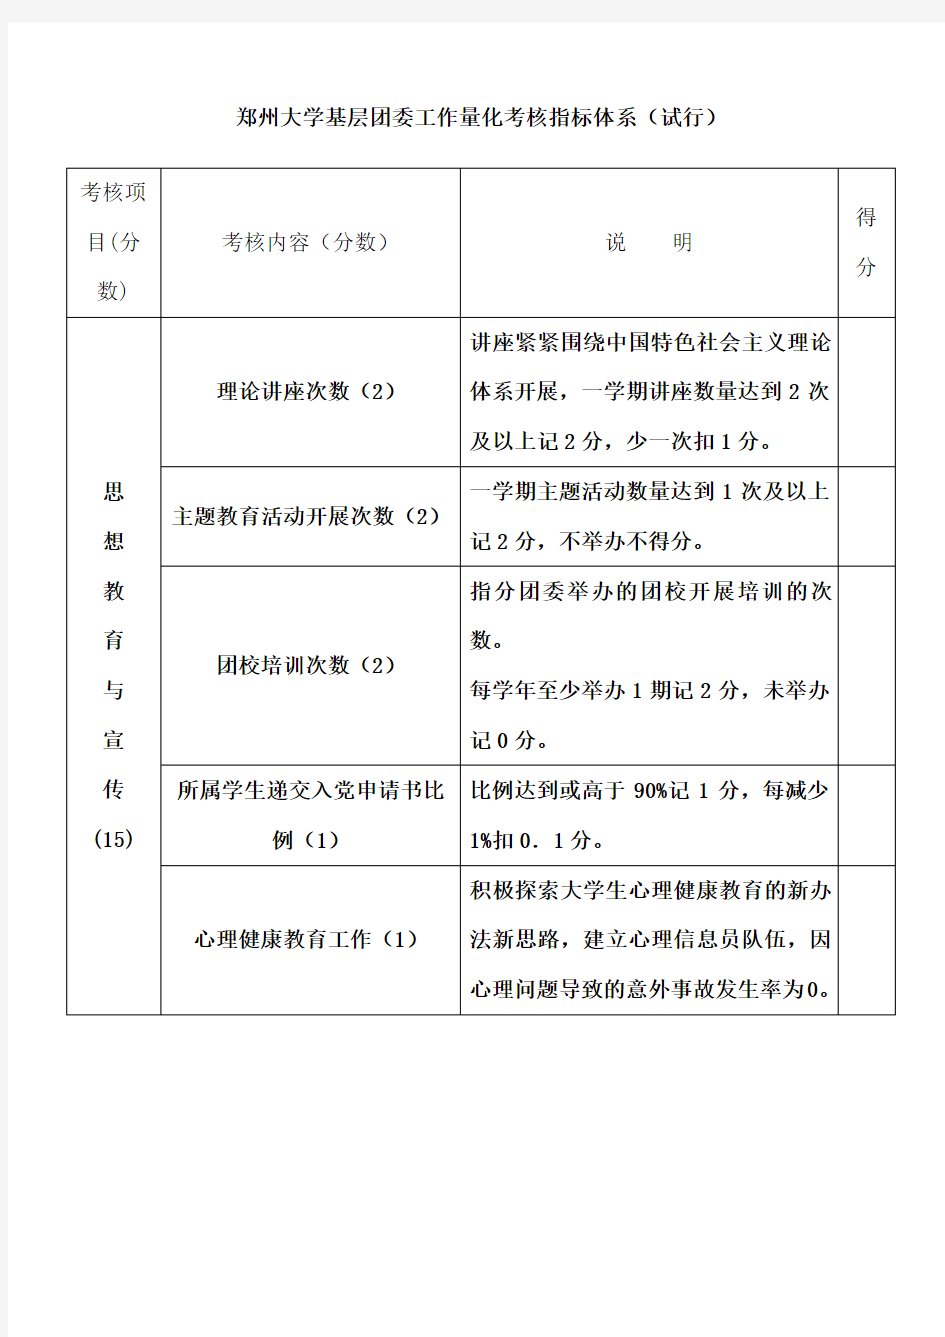 郑州大学基层团委工作量化考核方案